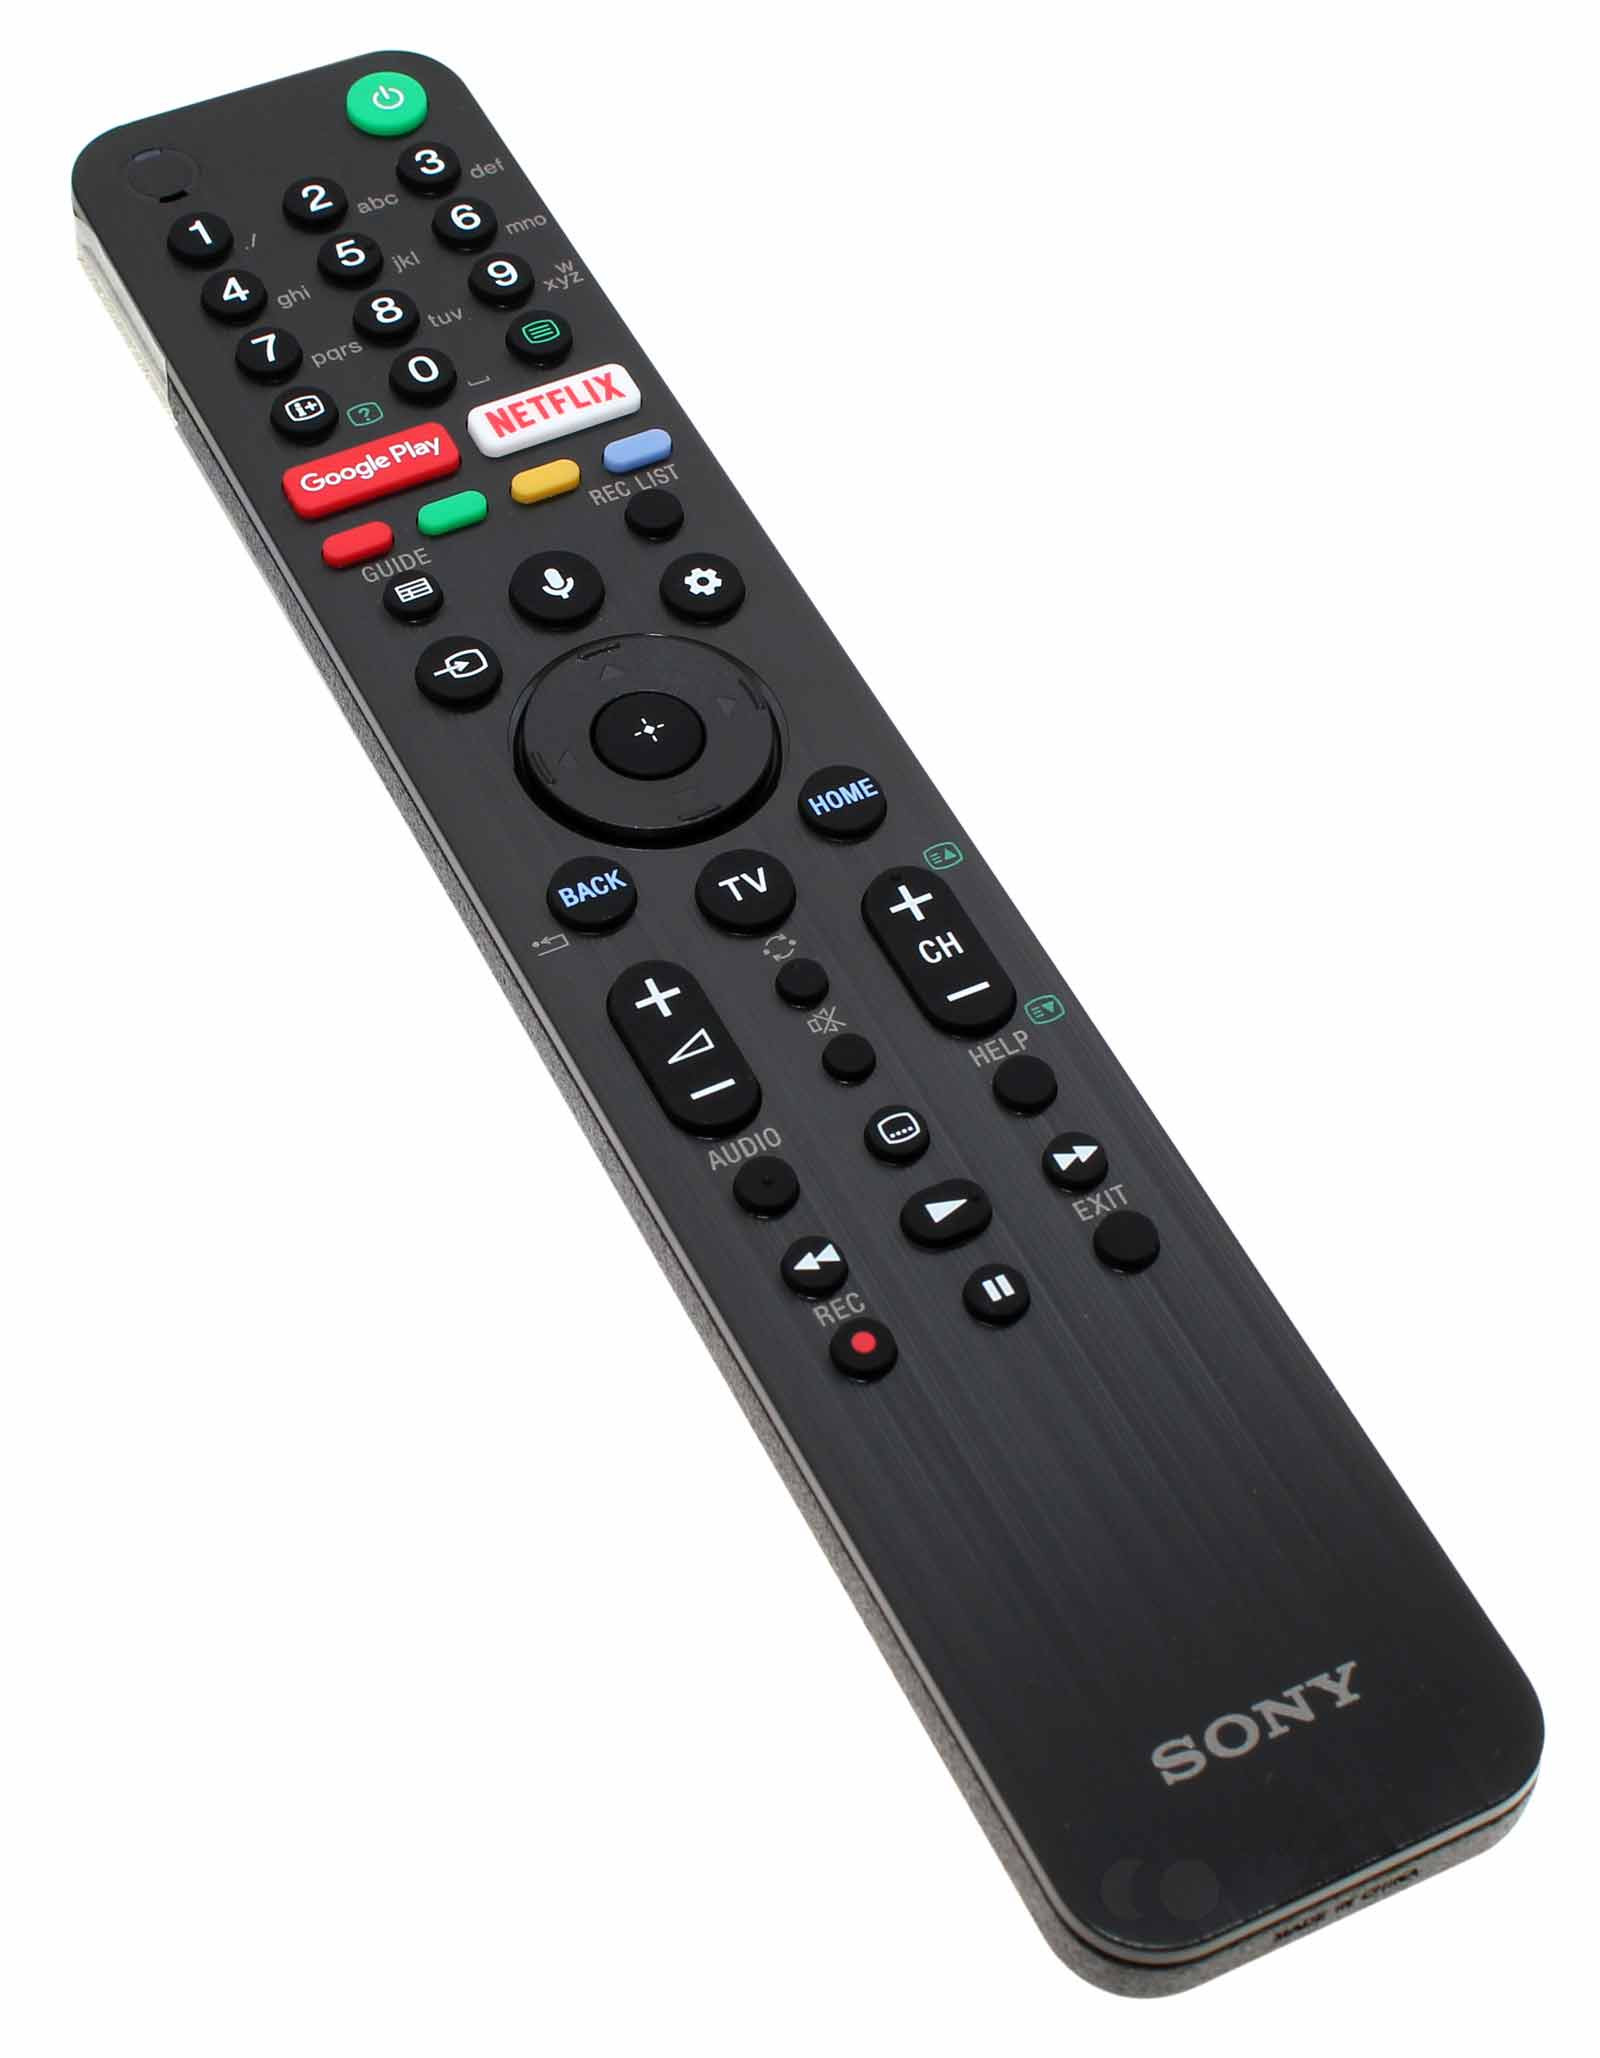 Original Sony Fernbedienung, Remote Control RMF-TX500 für viele Sony KD Serie LCD, bzw, OLED TV Flatscreen Fernseher, Hersteller Artikelnummer 149355423, bzw. 149355413.